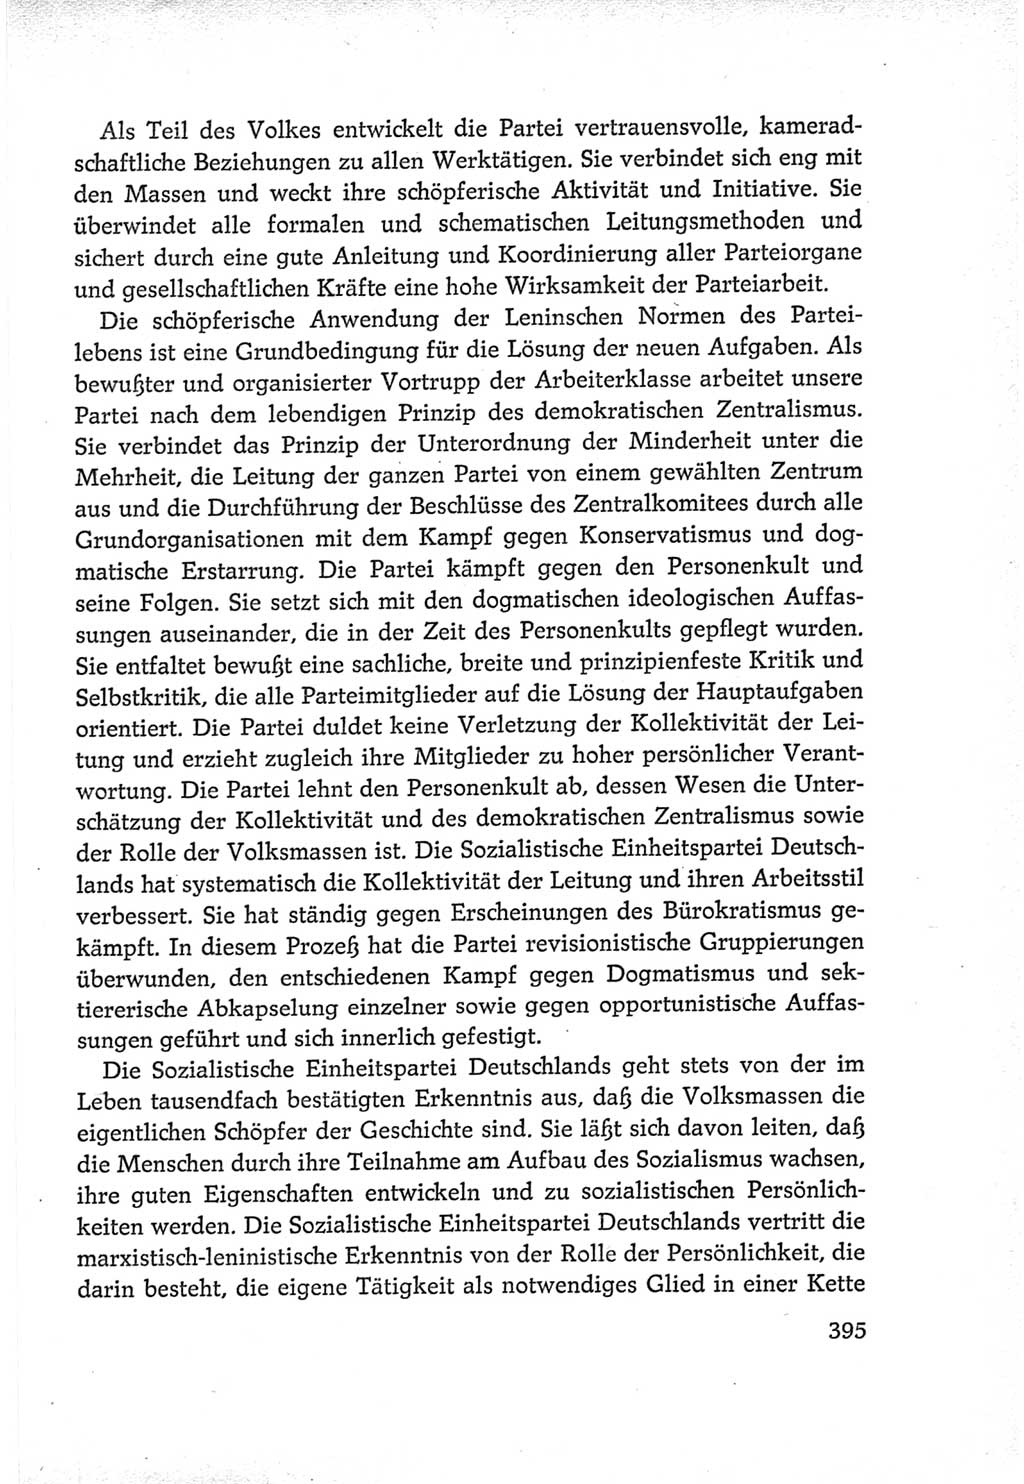 Protokoll der Verhandlungen des Ⅵ. Parteitages der Sozialistischen Einheitspartei Deutschlands (SED) [Deutsche Demokratische Republik (DDR)] 1963, Band Ⅳ, Seite 395 (Prot. Verh. Ⅵ. PT SED DDR 1963, Bd. Ⅳ, S. 395)